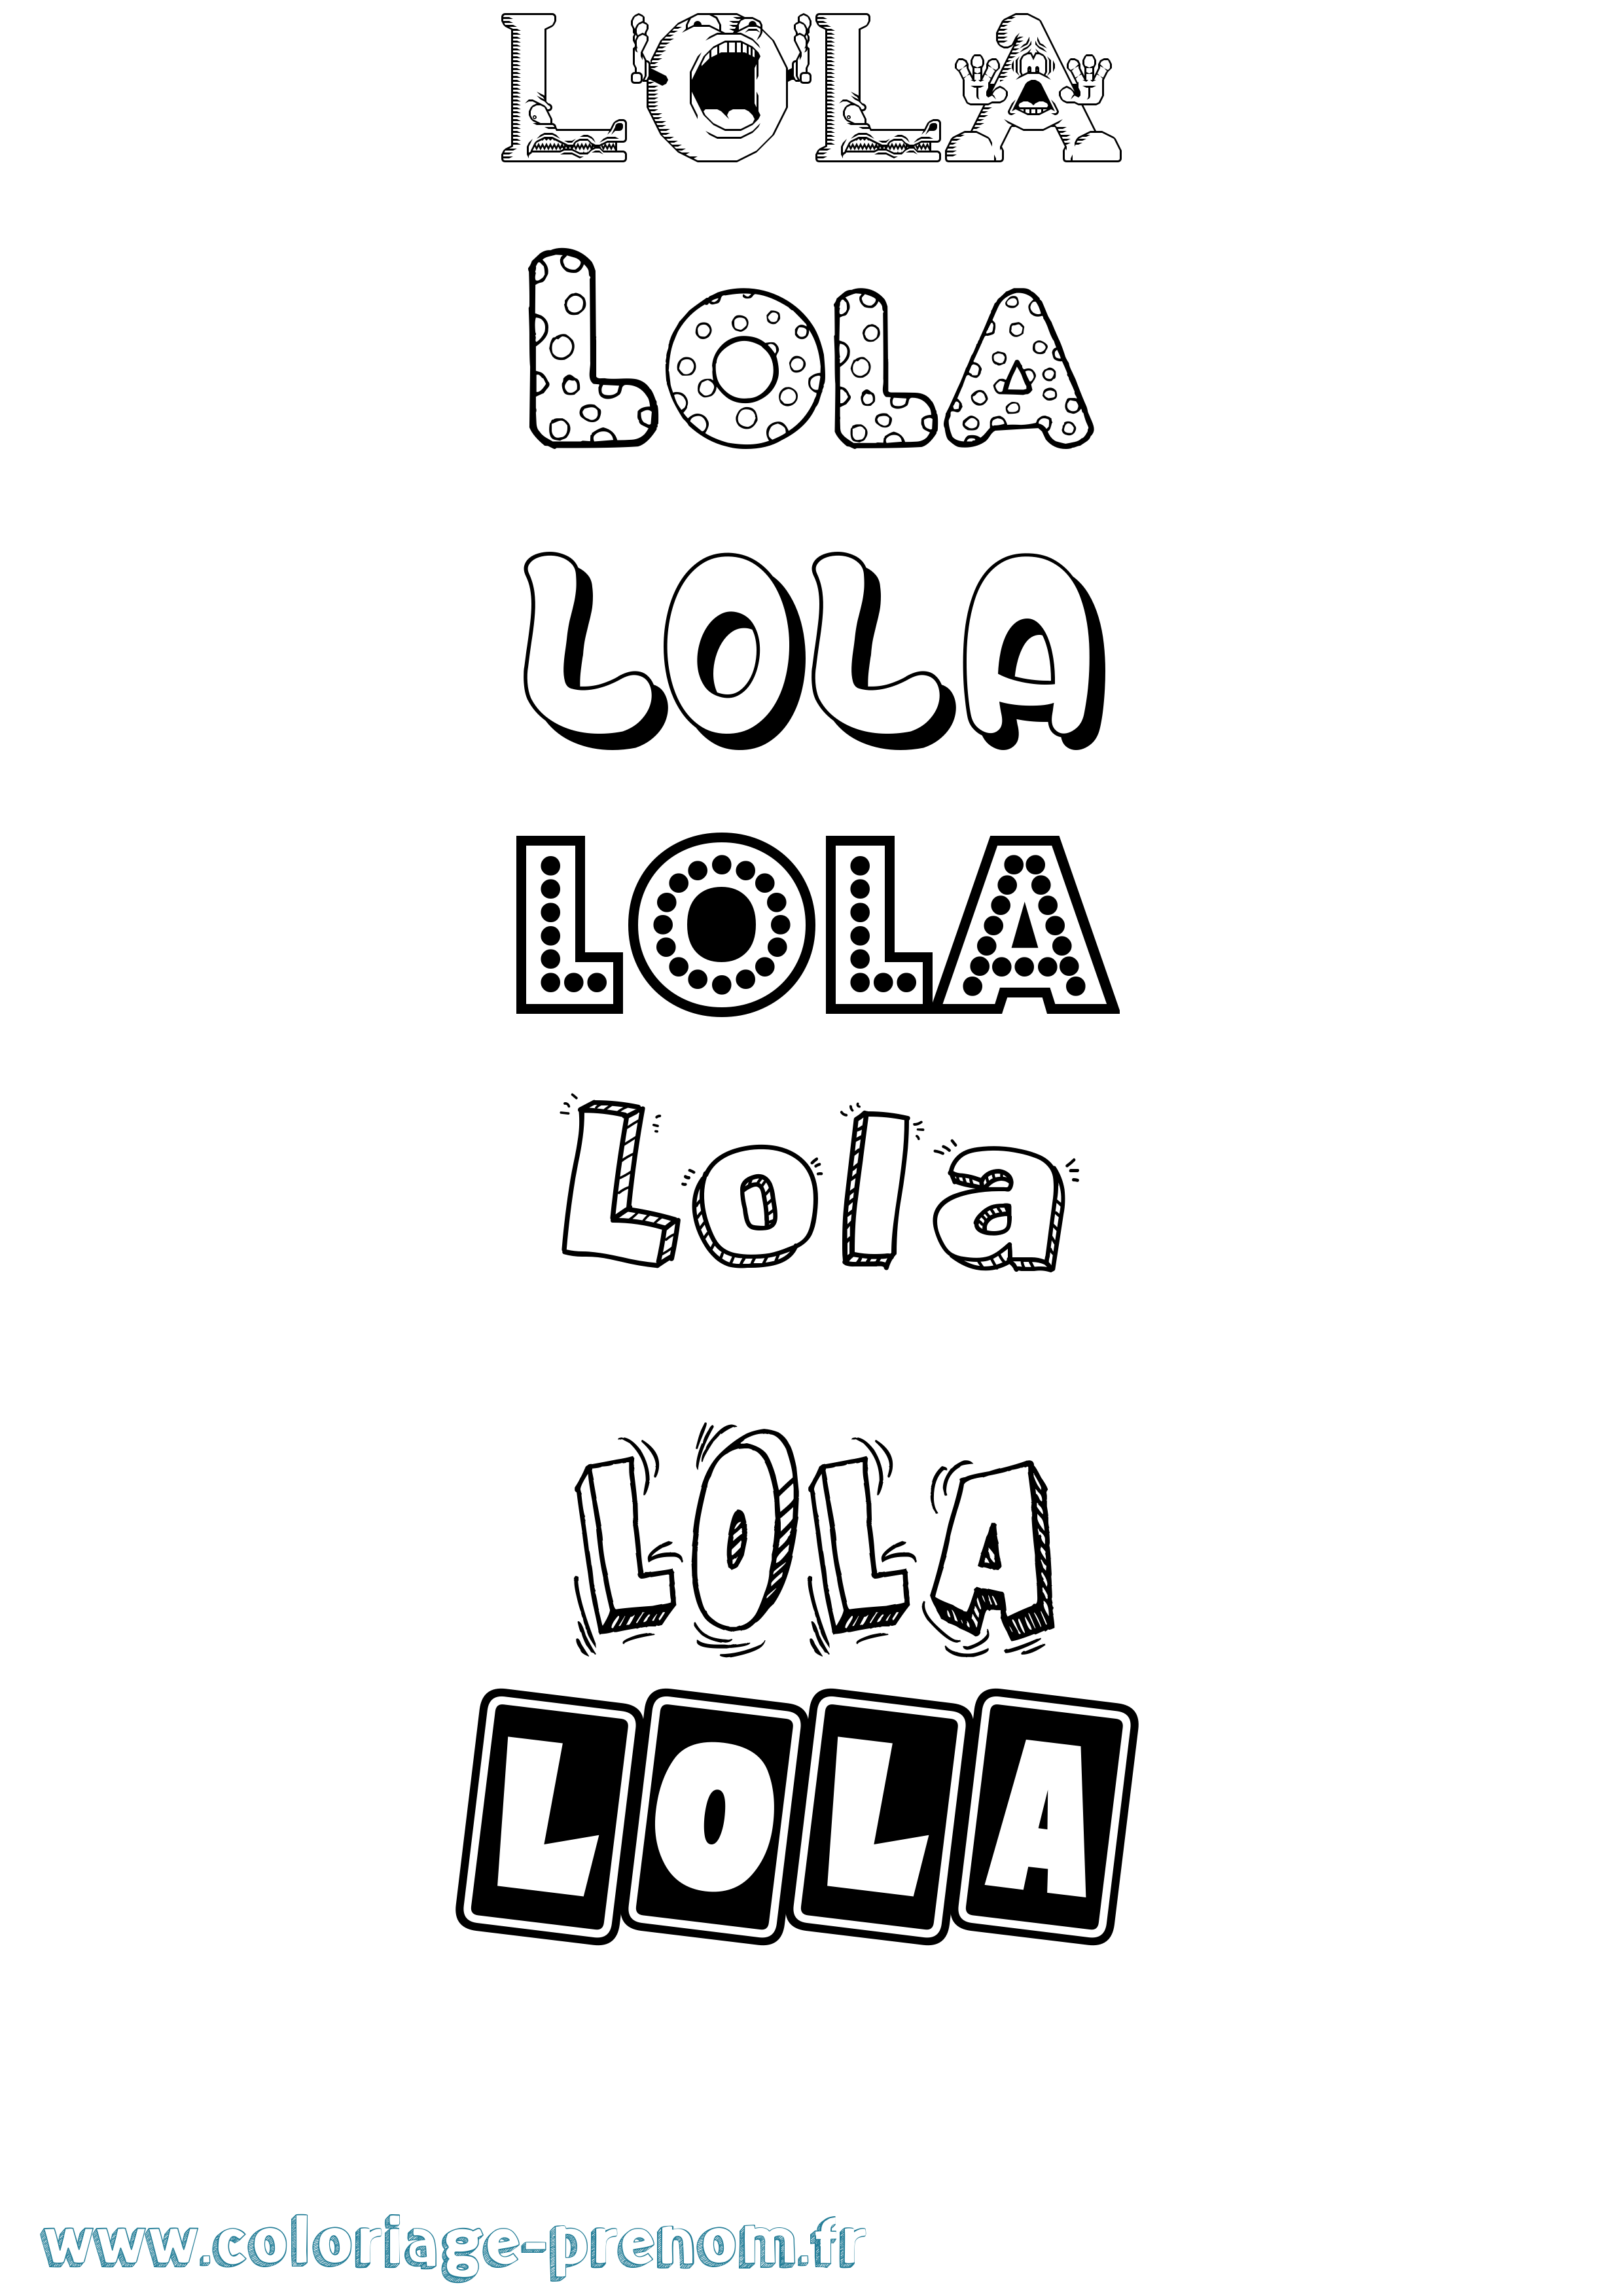 Coloriage prénom Lola Fun